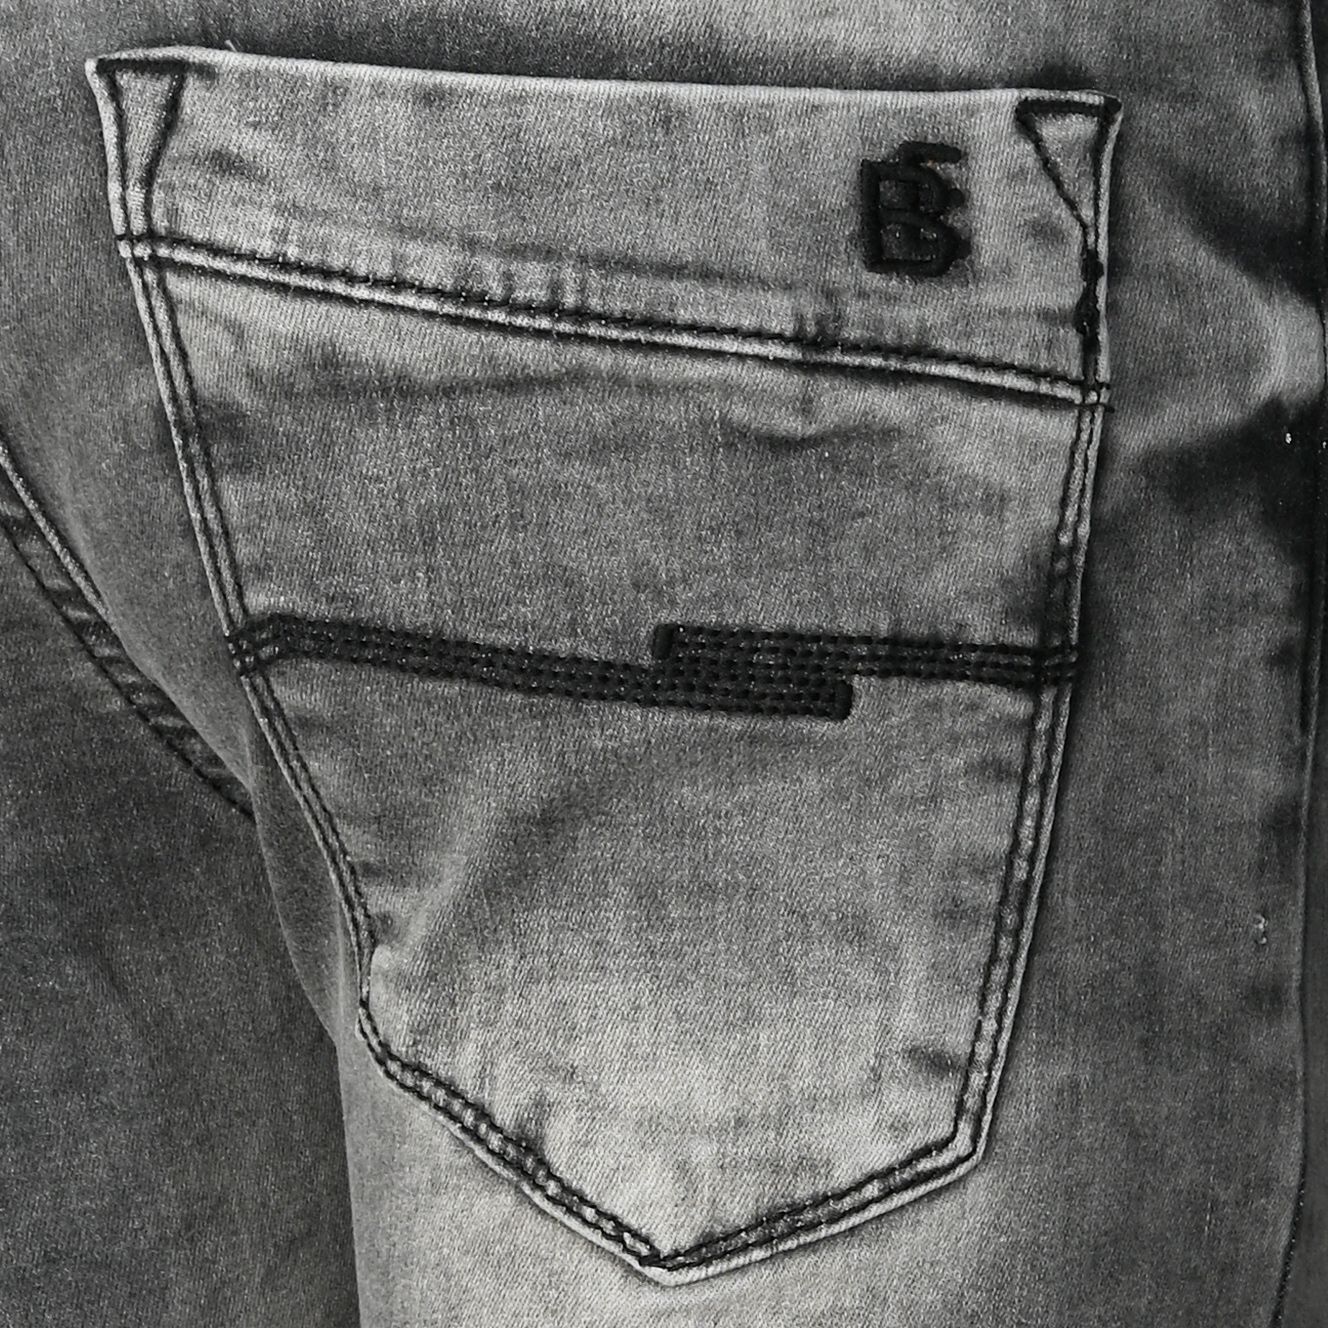 DE 80 Jungen Bekleidung Hosen Jeans Jungen Jeans Gr Denim & Co 